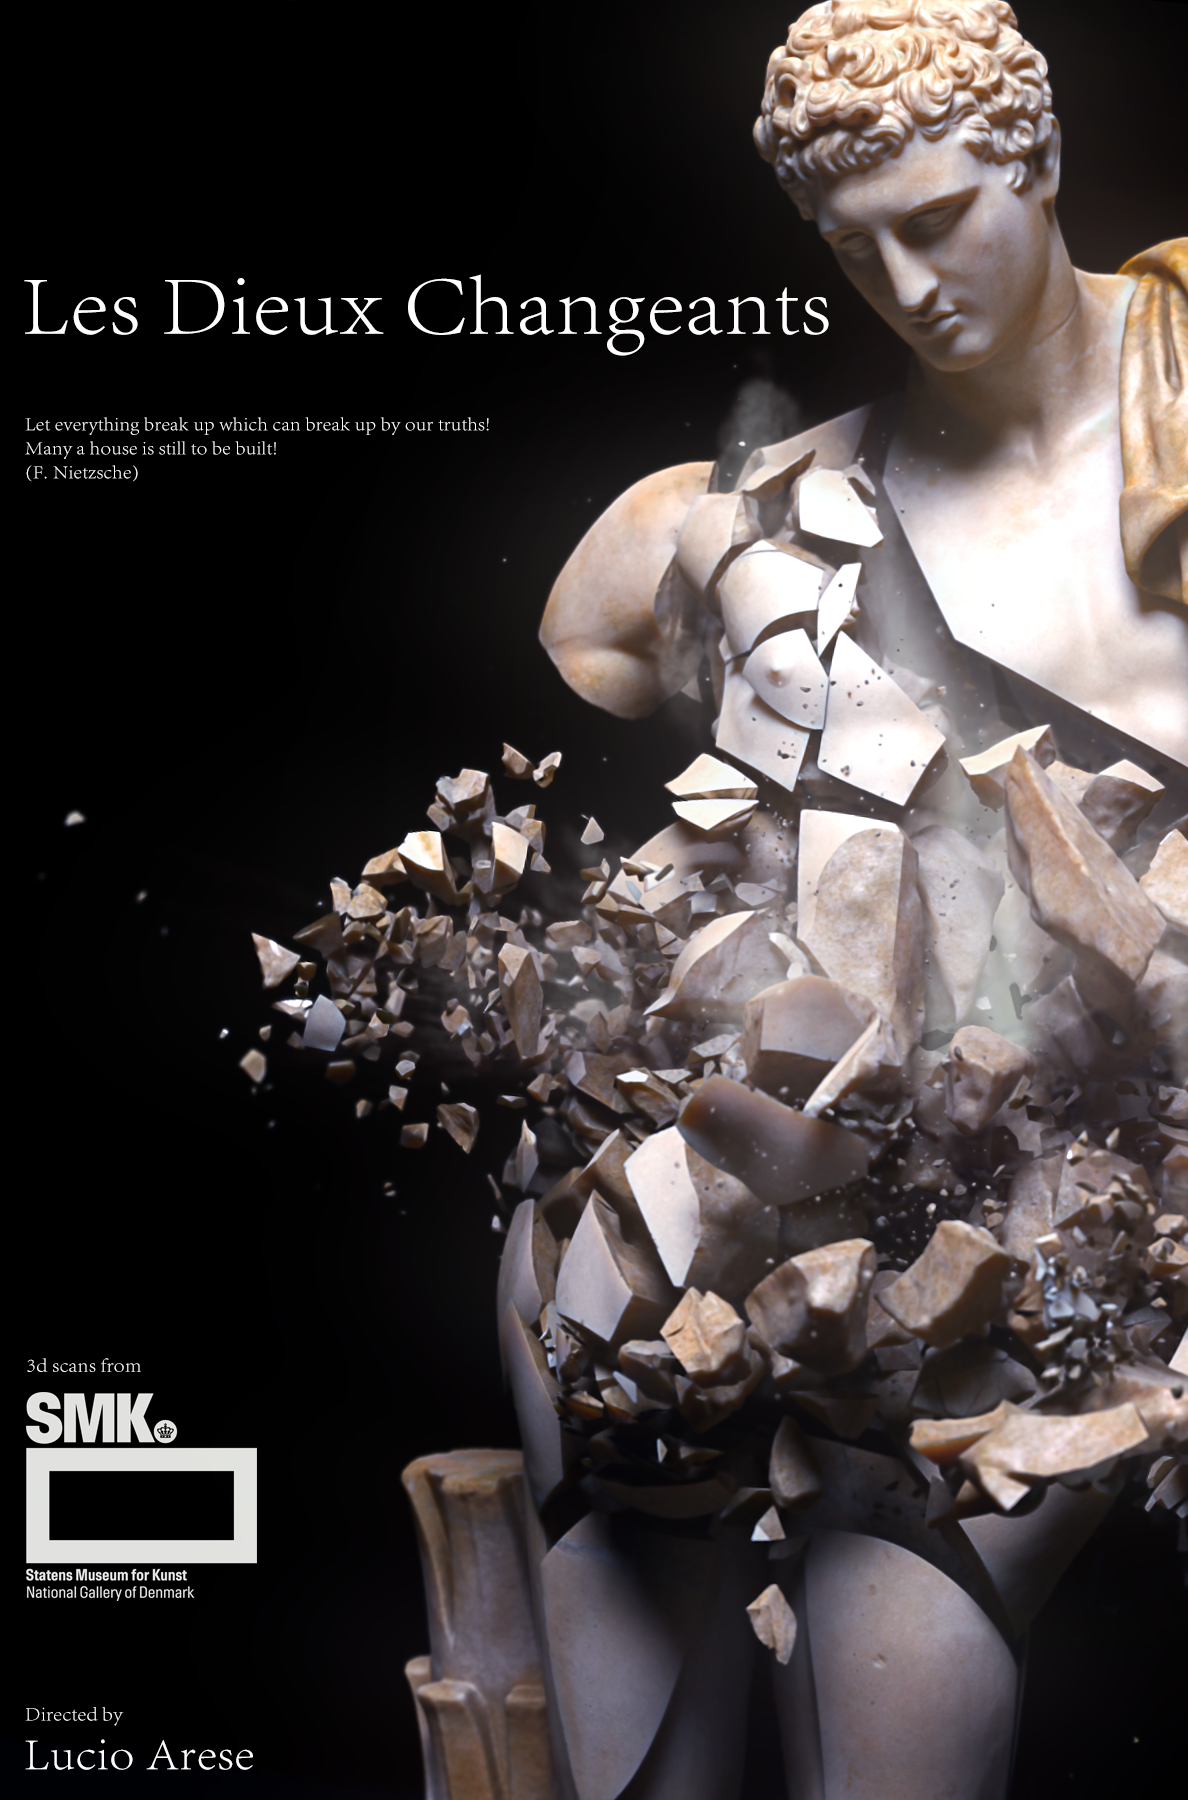 Les Dieux Changeants is online